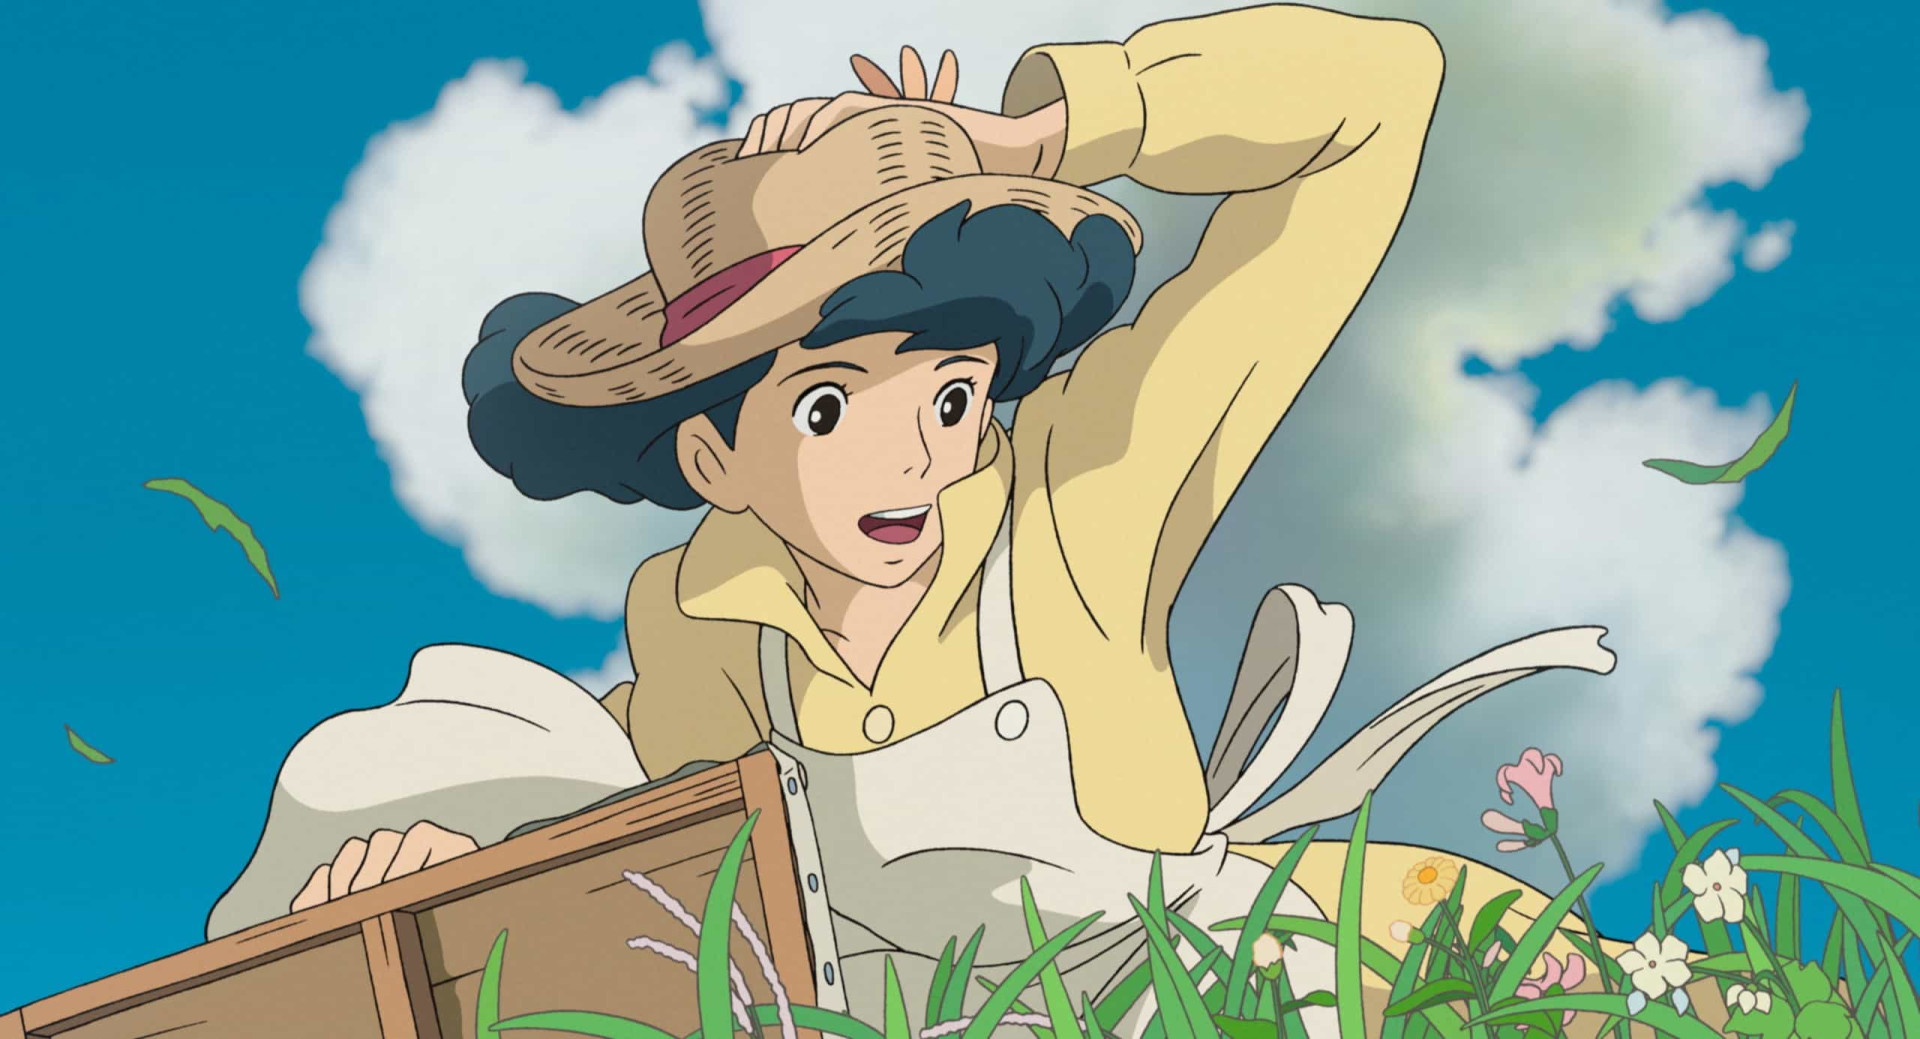 <p>Inspiré du roman du même nom, "Le vent se lève" sorti en 2013, était censé être le 11e et dernier long métrage de Hayao Miyazaki. C'est sans surprise qu'il raconte l'histoire d'un homme qui aspire à être pilote, mais qui est freiné par sa myopie.</p><p>Tu pourrais aussi aimer:<a href="https://www.starsinsider.com/n/463153?utm_source=msn.com&utm_medium=display&utm_campaign=referral_description&utm_content=518527v2"> La France gallo-romaine: découvrez ces sites d'exception</a></p>